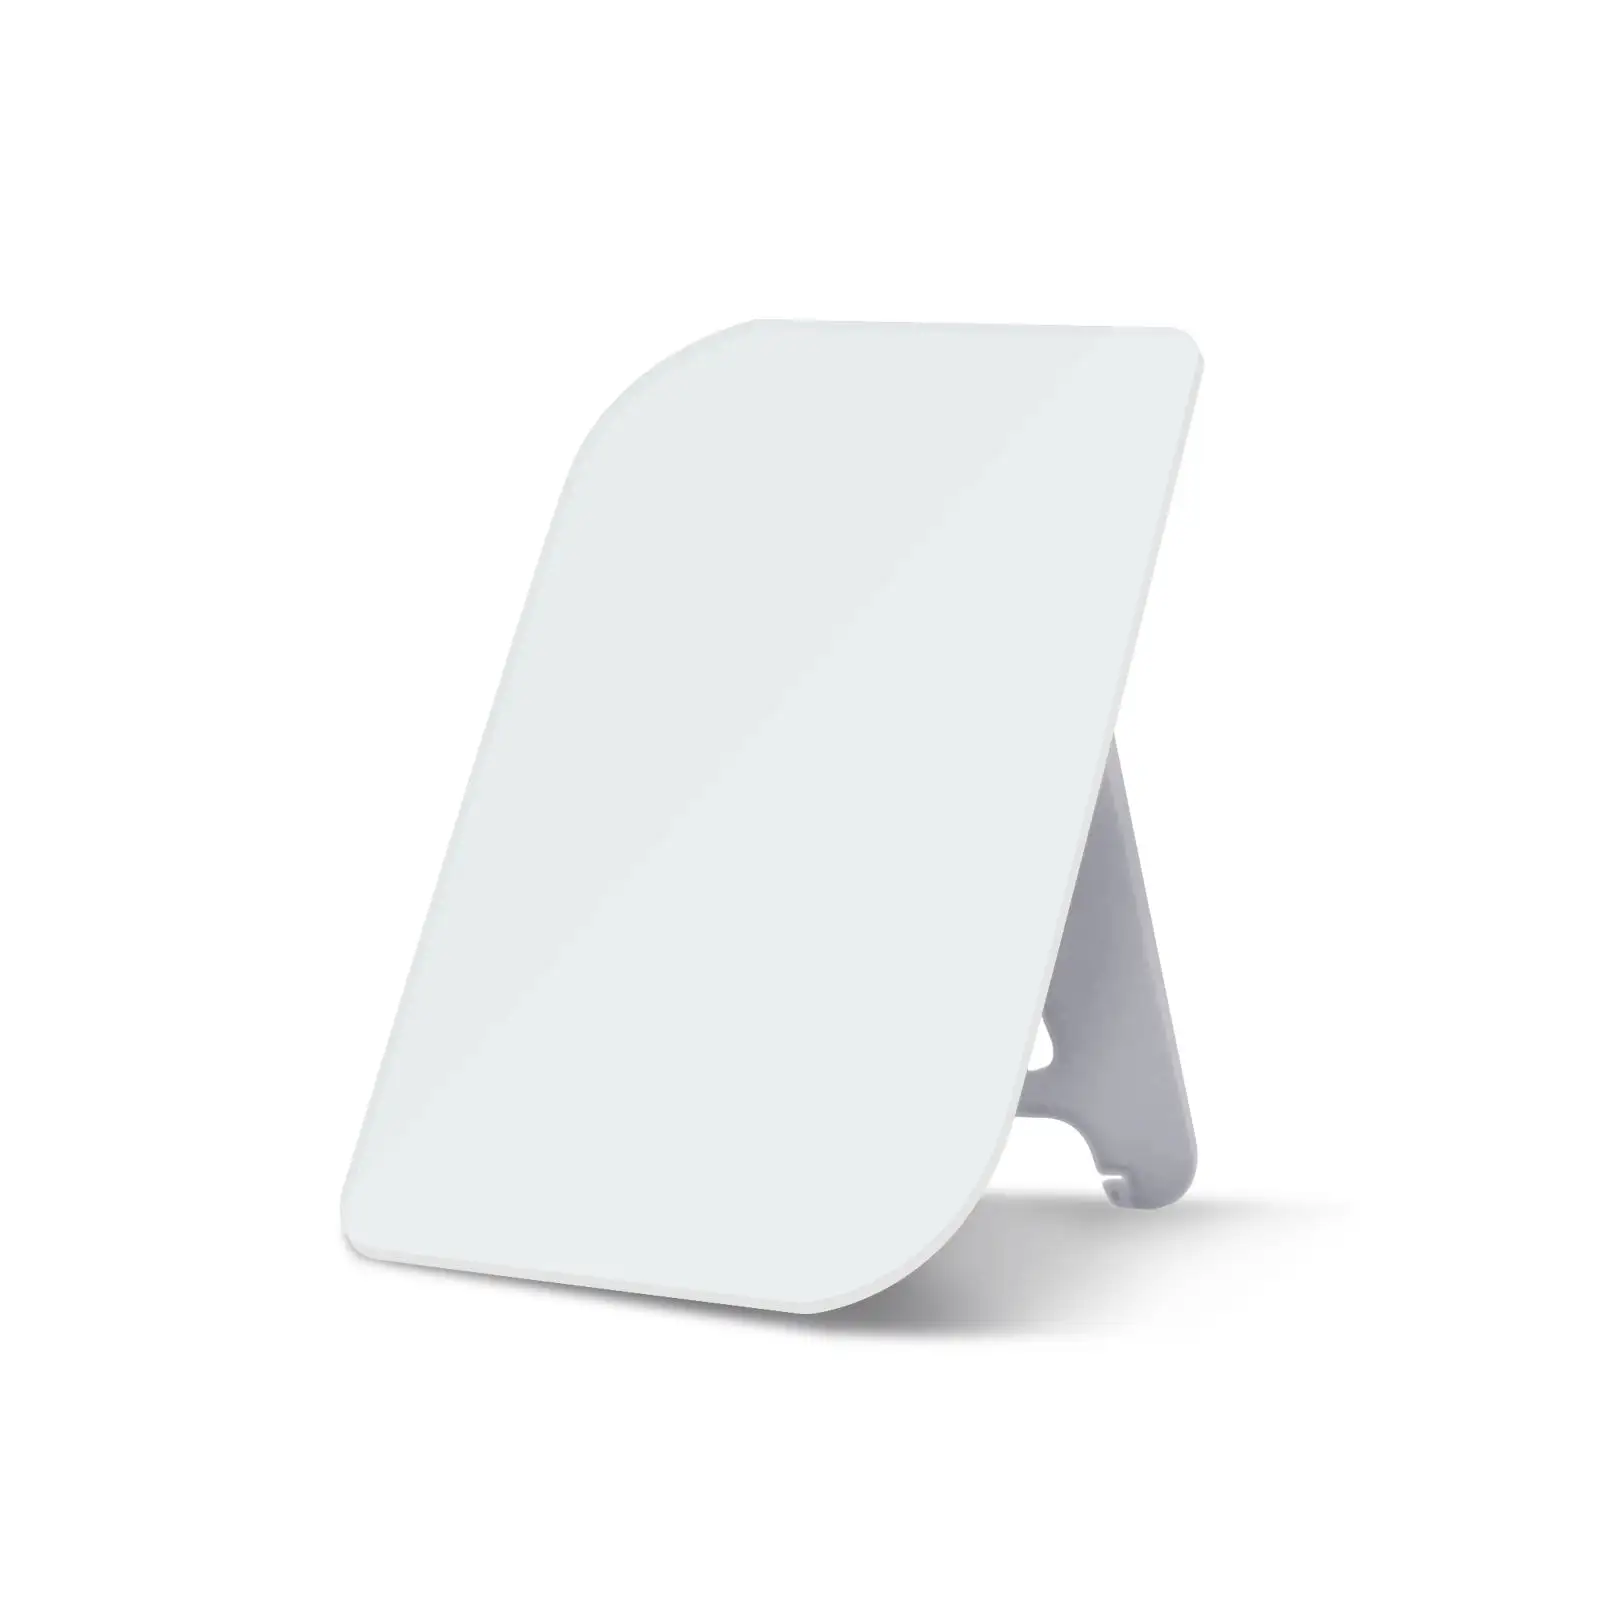 لوحة بيضاء صغيرة مربعة الشكل للمكتب أو المكتب سهلة المسح لوحة بيضاء للمكتب أو المنزل